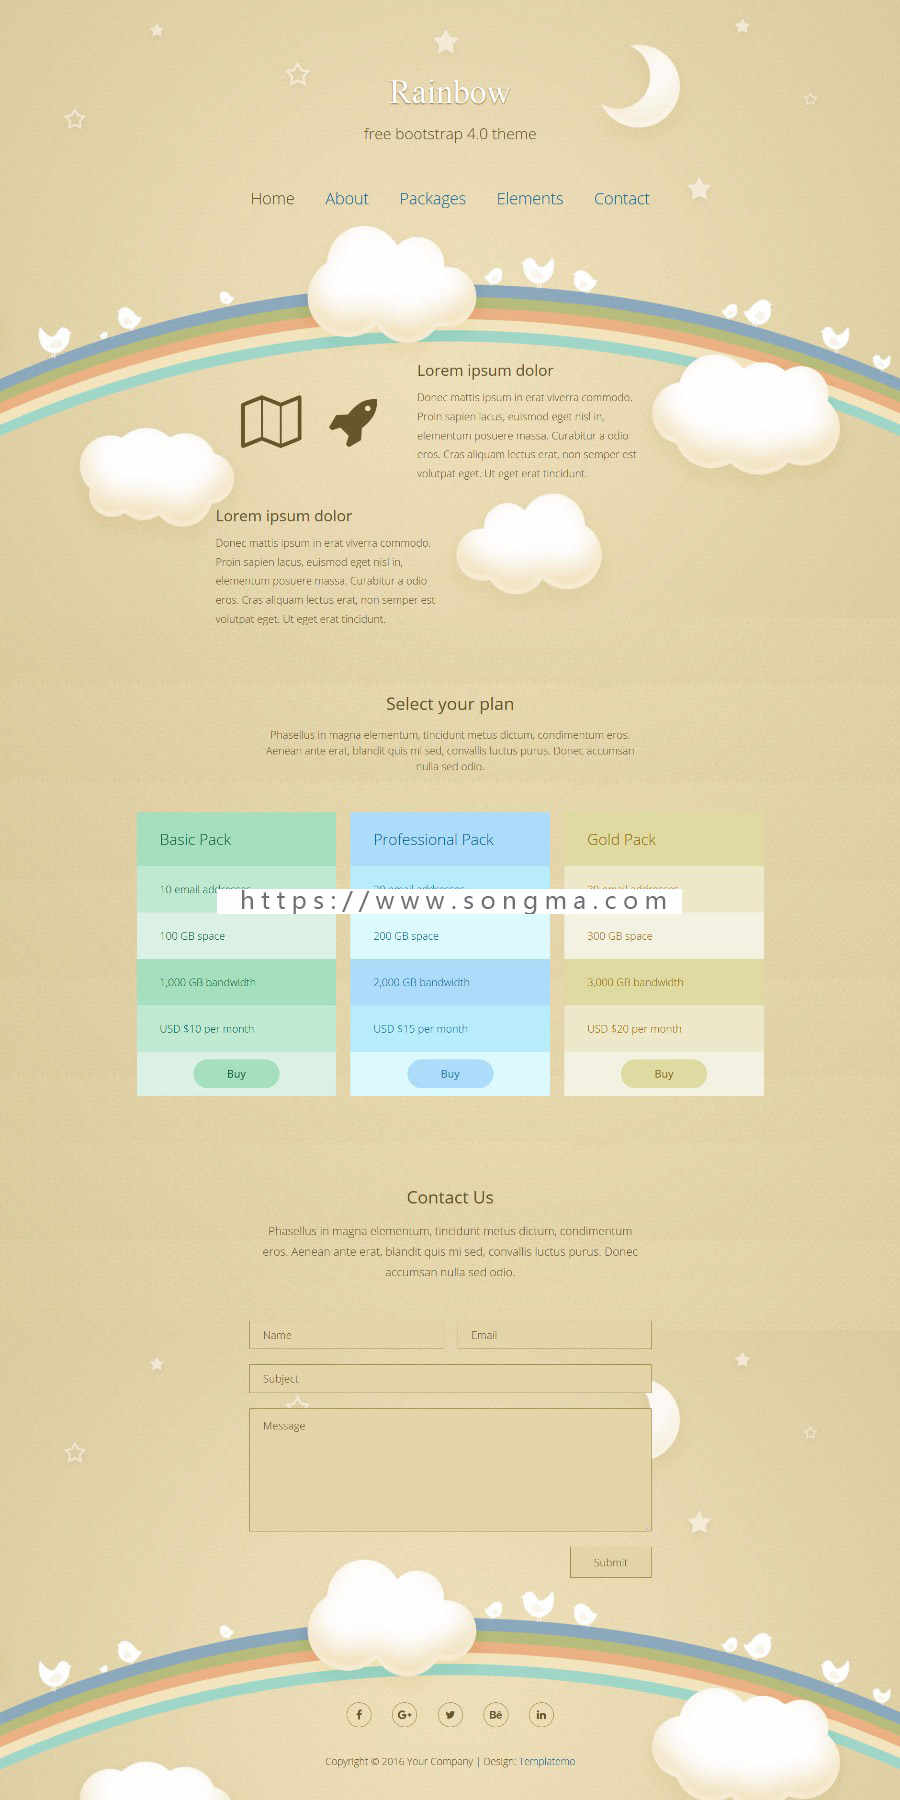 html网页源码 大学生网页设计制作成品 dw作业素材 英文网页模板